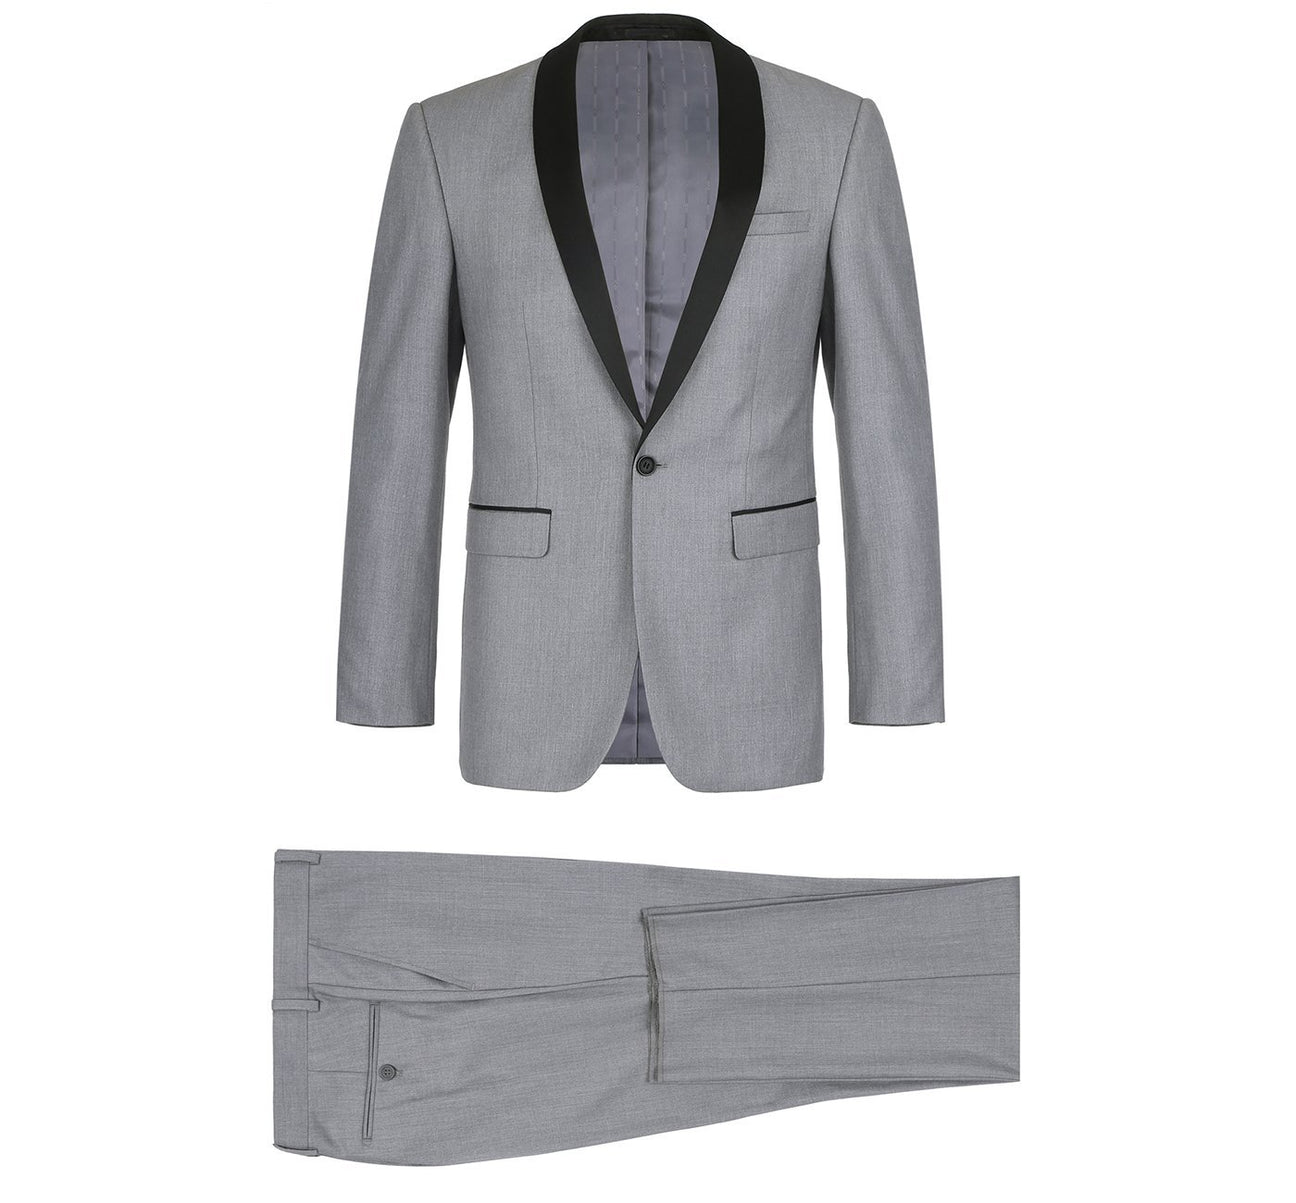 Renoir 202-2 Men's Slim Fit 2-Piece Shawl Lapel Slim Fit Tuxedo Suit